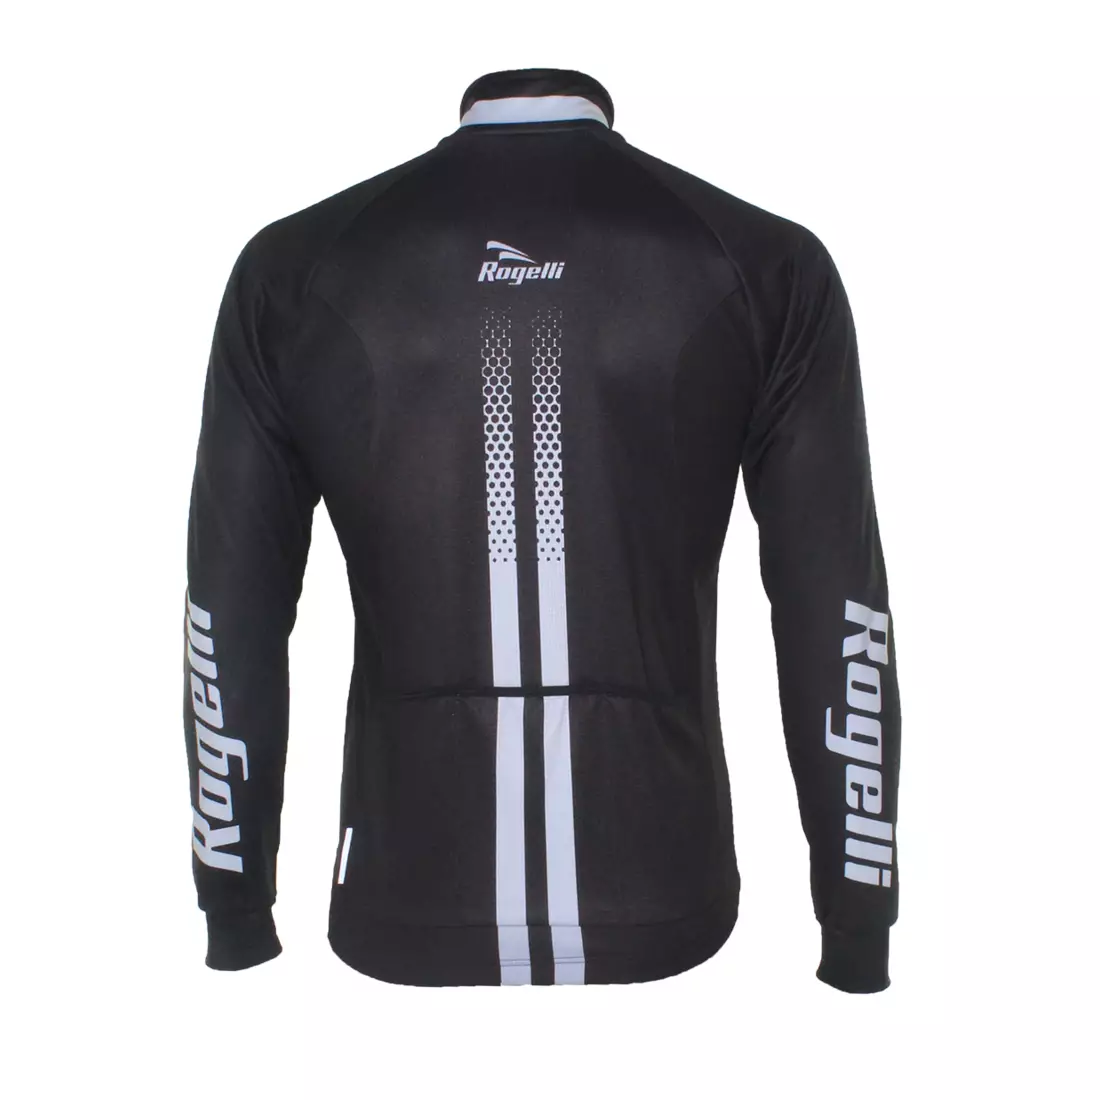 ROGELLI USCIO zimní cyklistická bunda WINDTEX černo-šedá